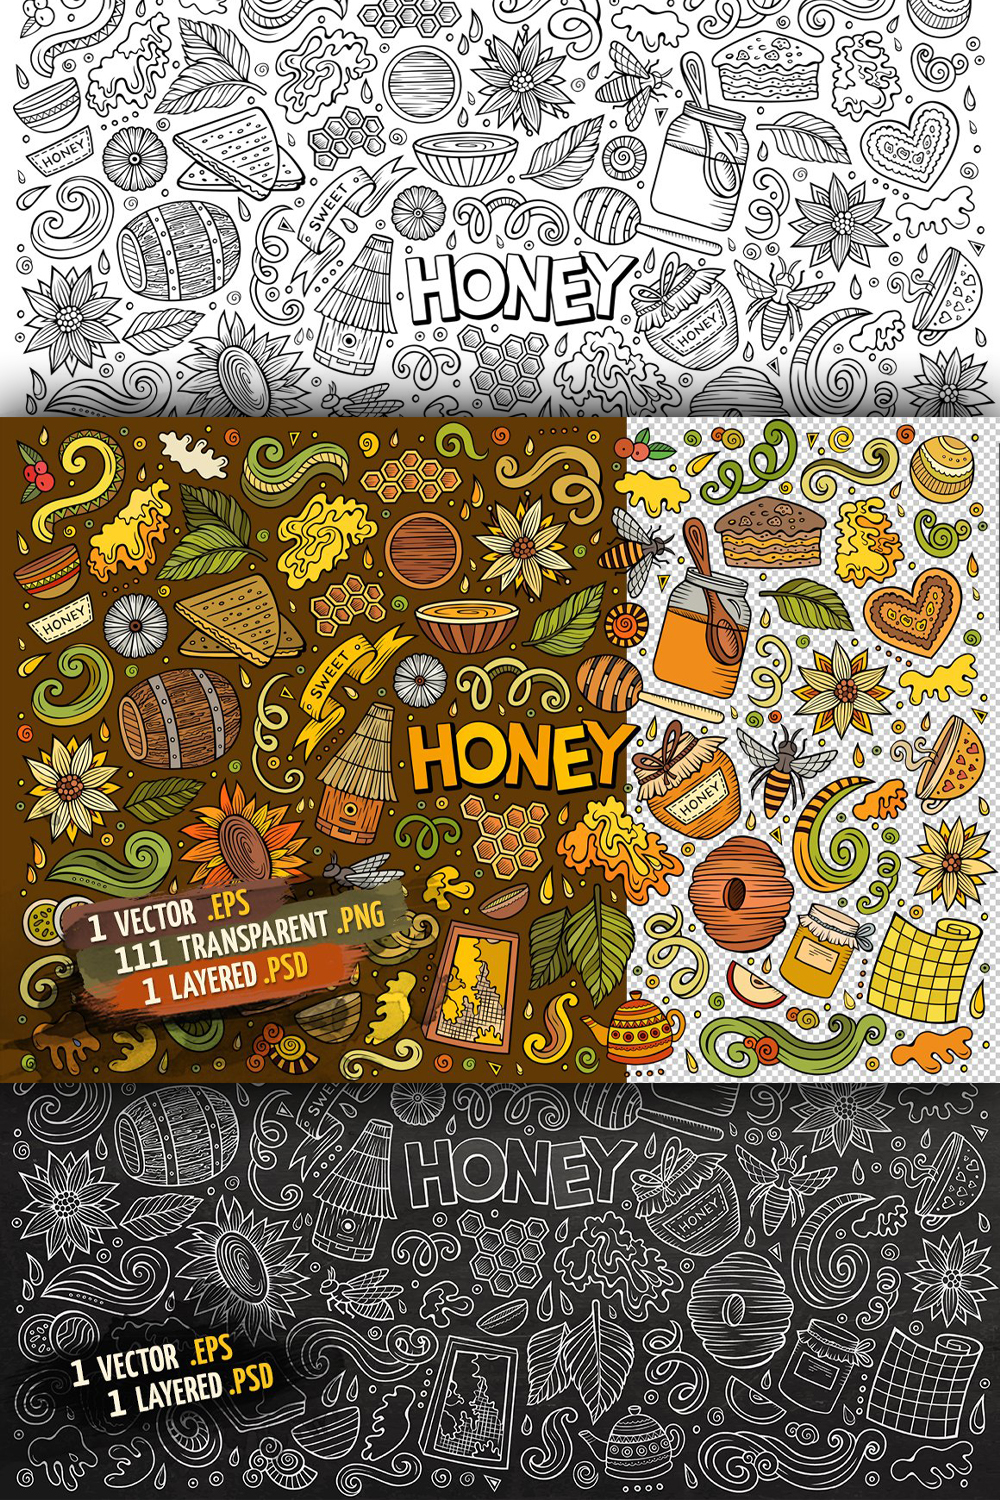 Honey objects symbols set pinterest.